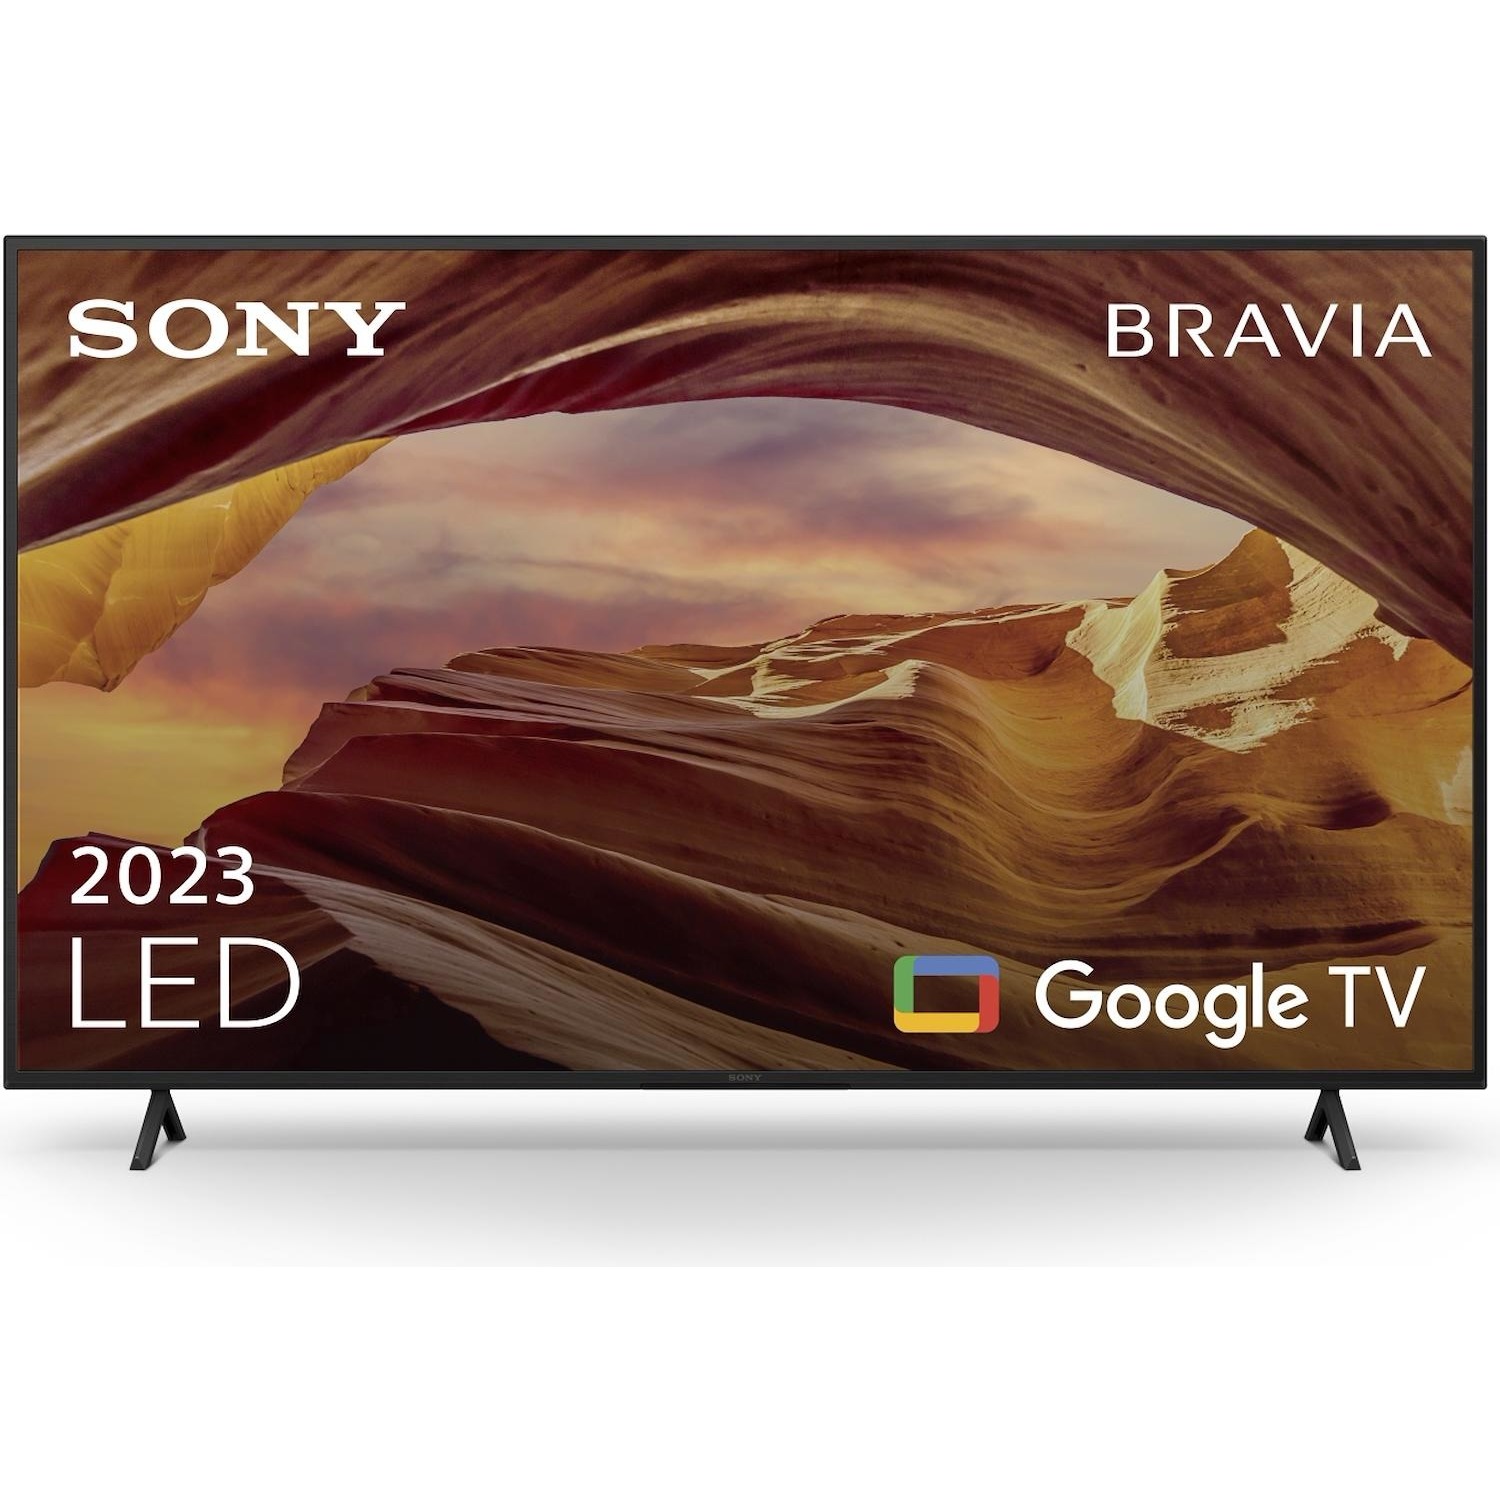 Immagine per TV LED Smart 4K UHD Sony 65X75W da DIMOStore